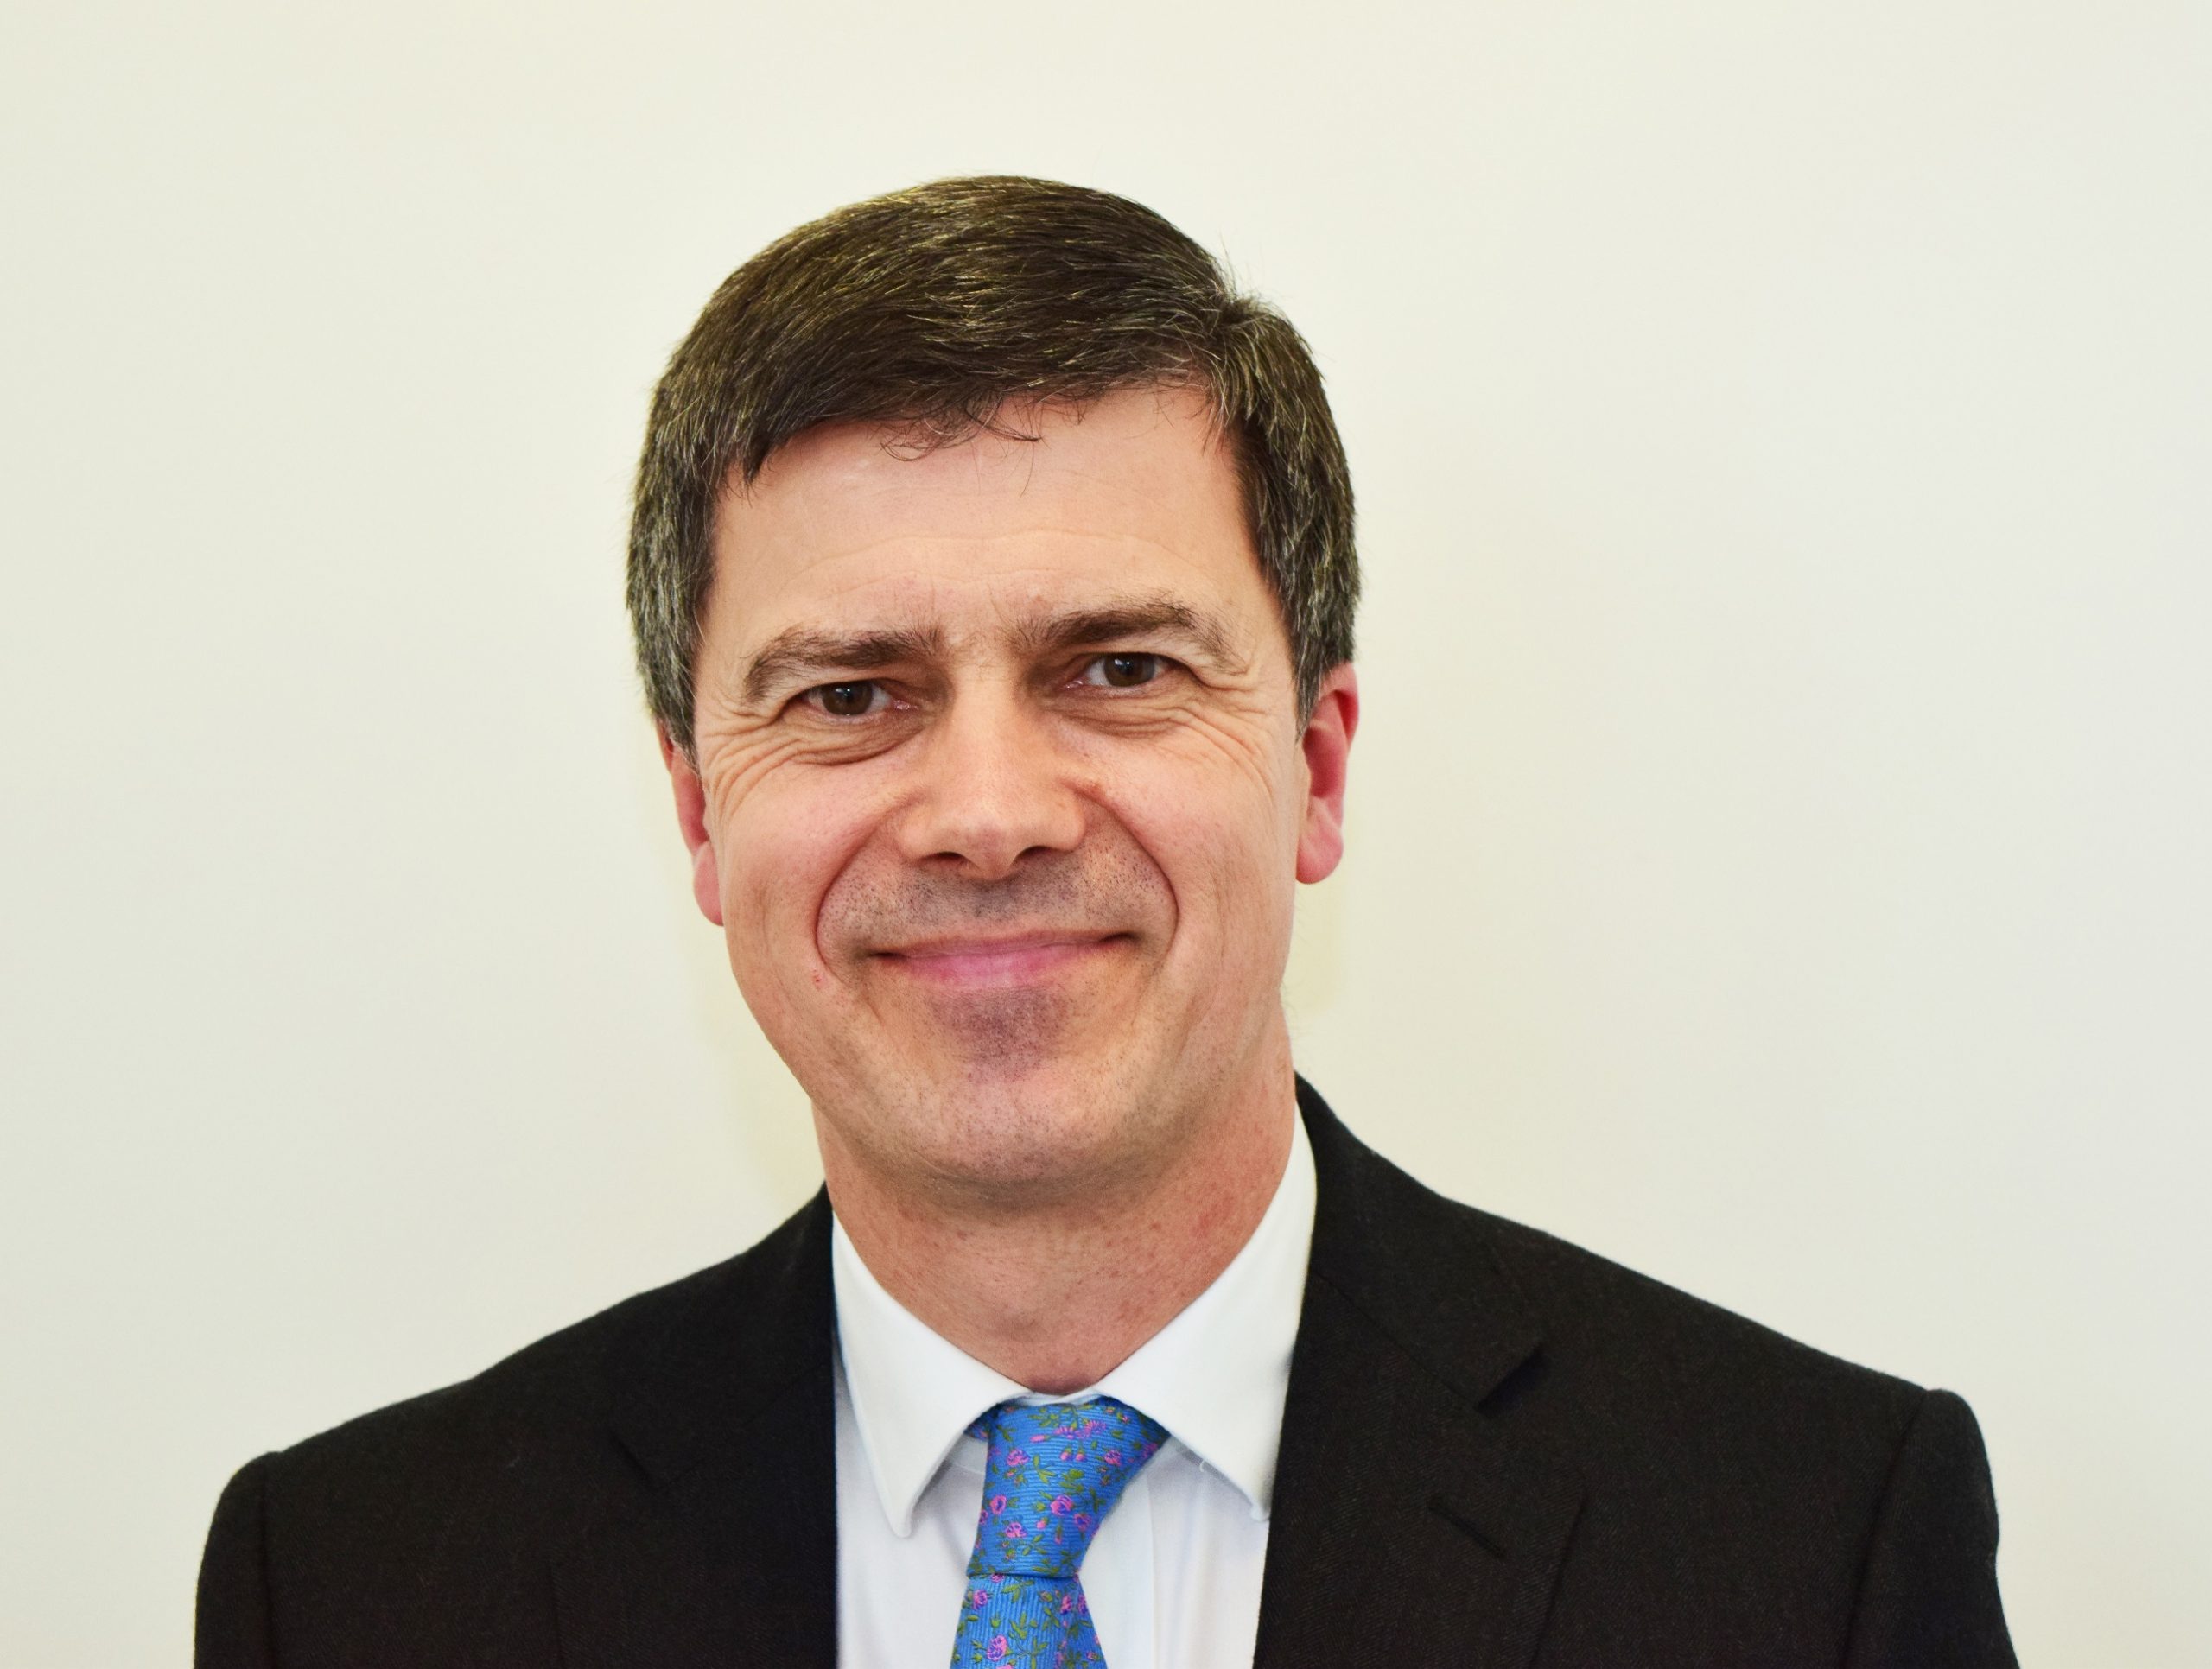 Gareth Llewellyn, DVSA Chief Executive